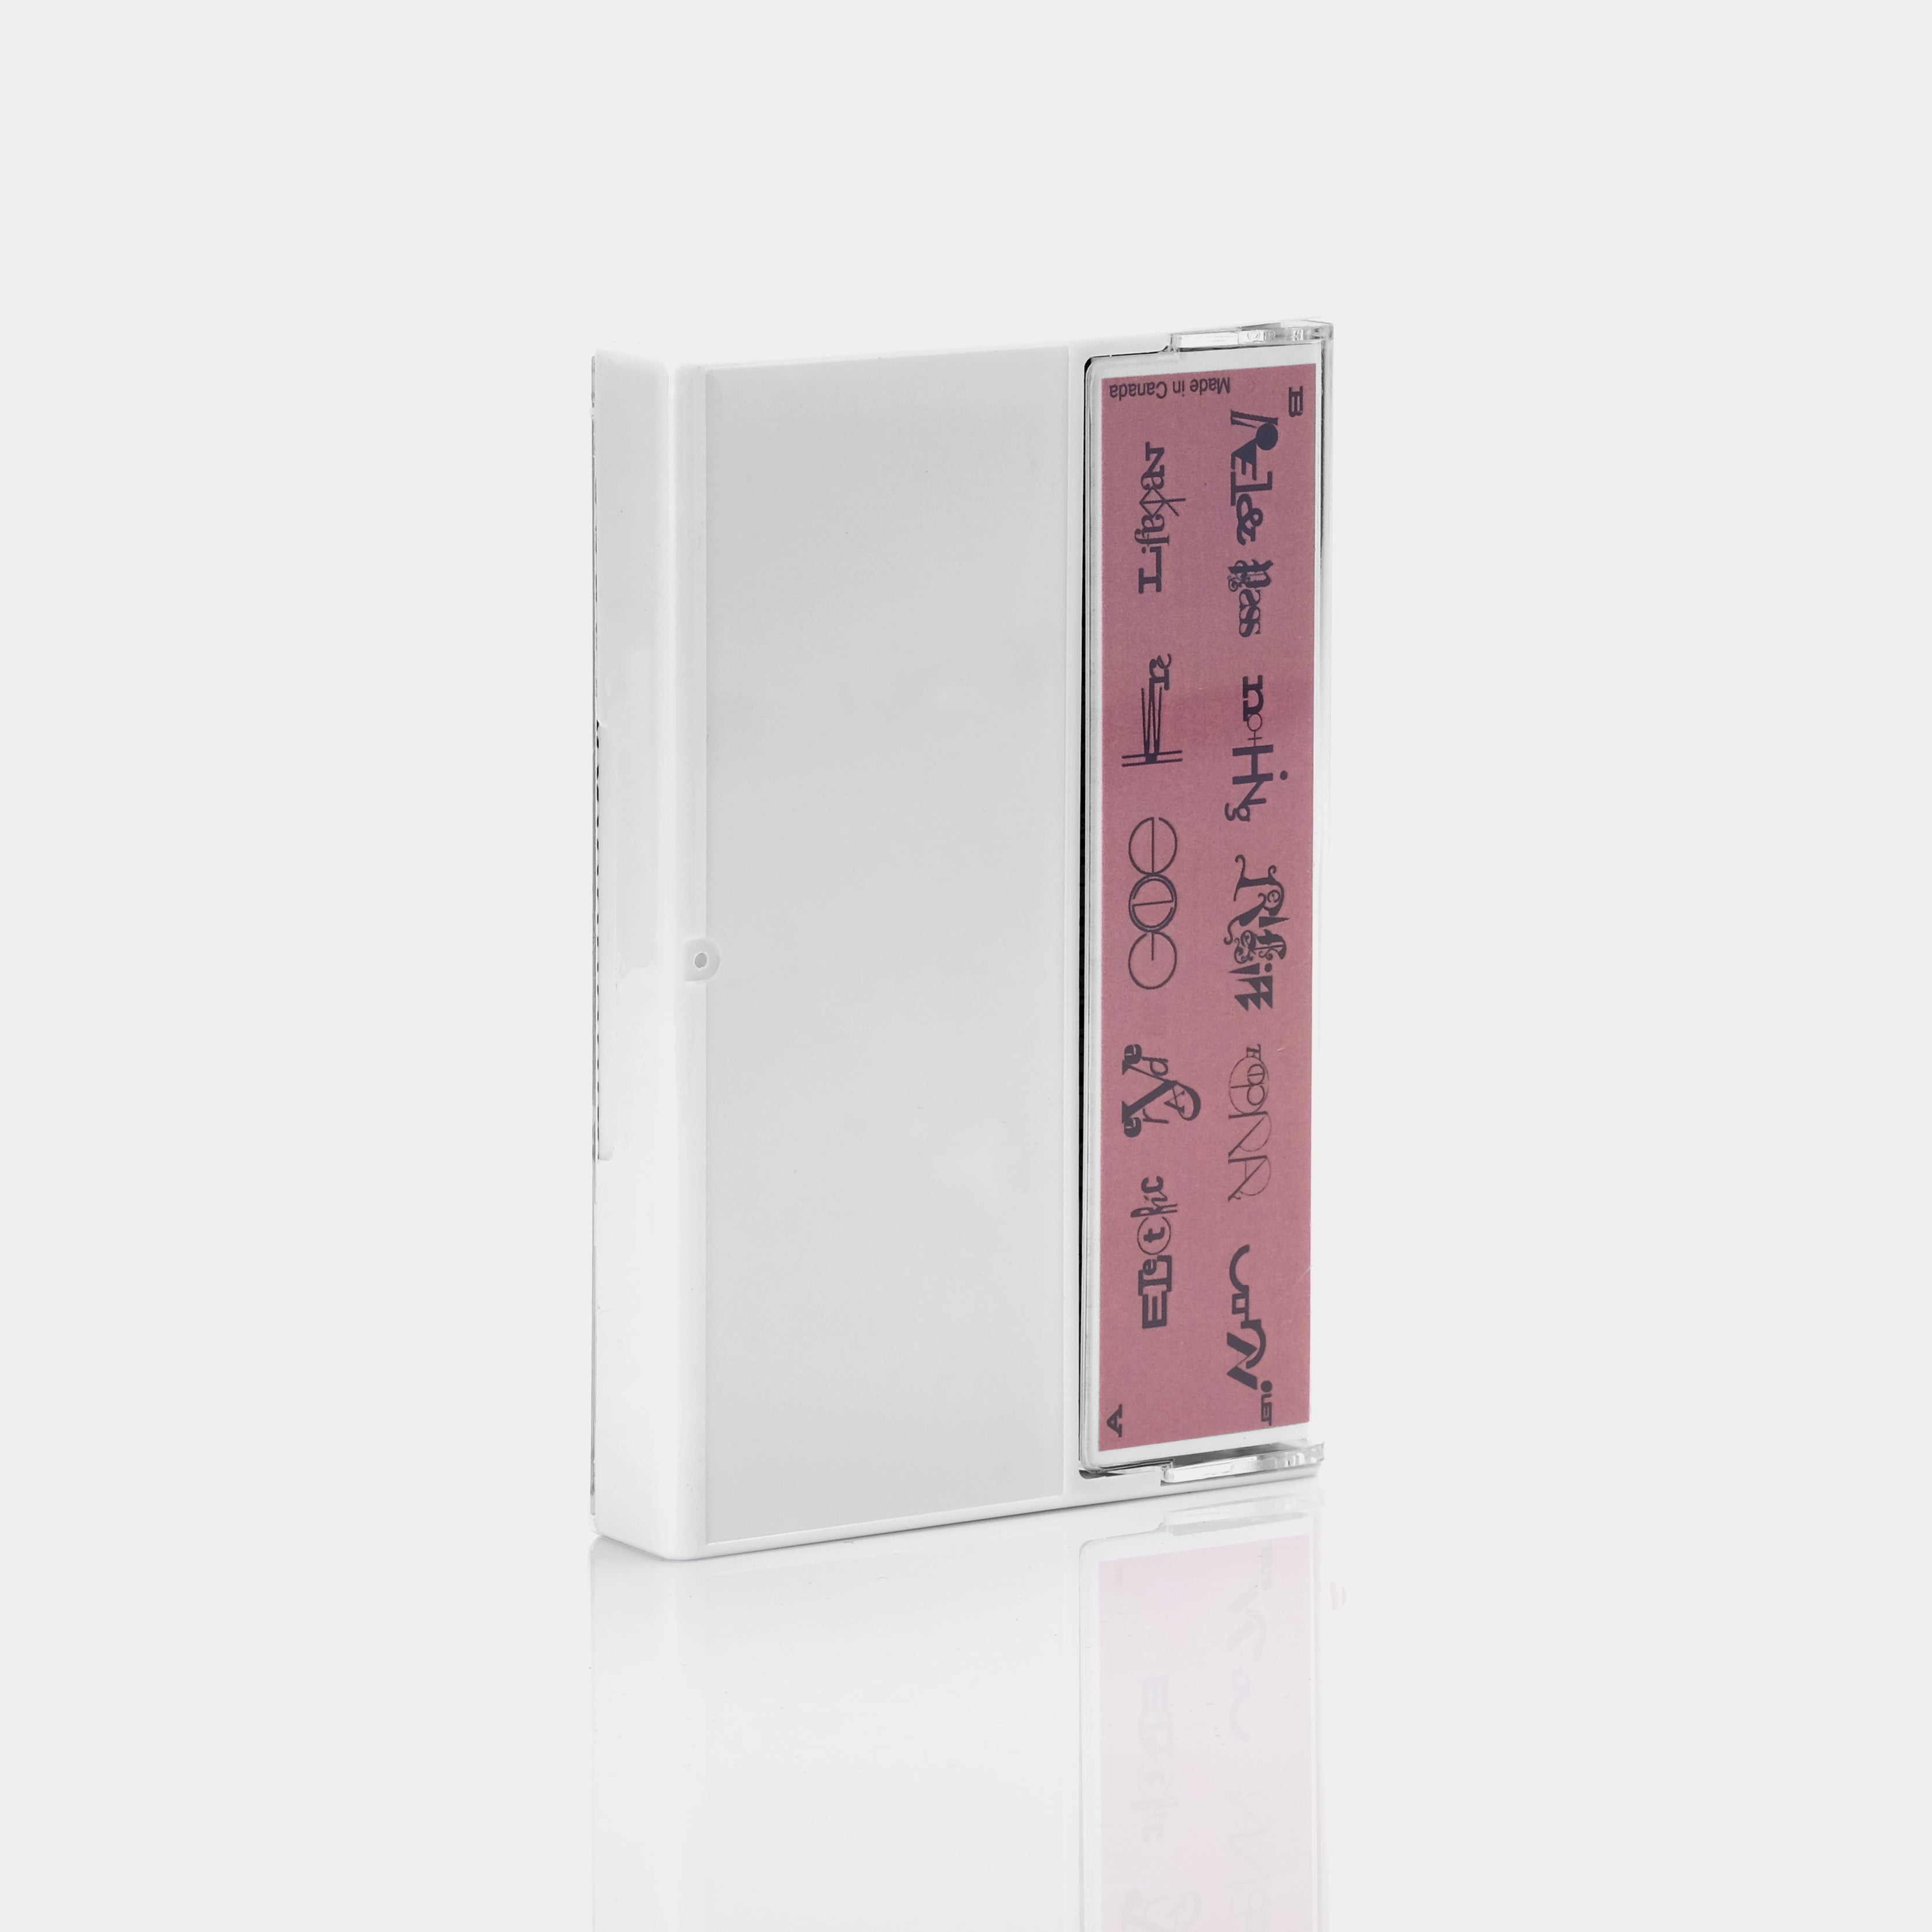 Lionlimb - Spiral Groove Cassette Tape